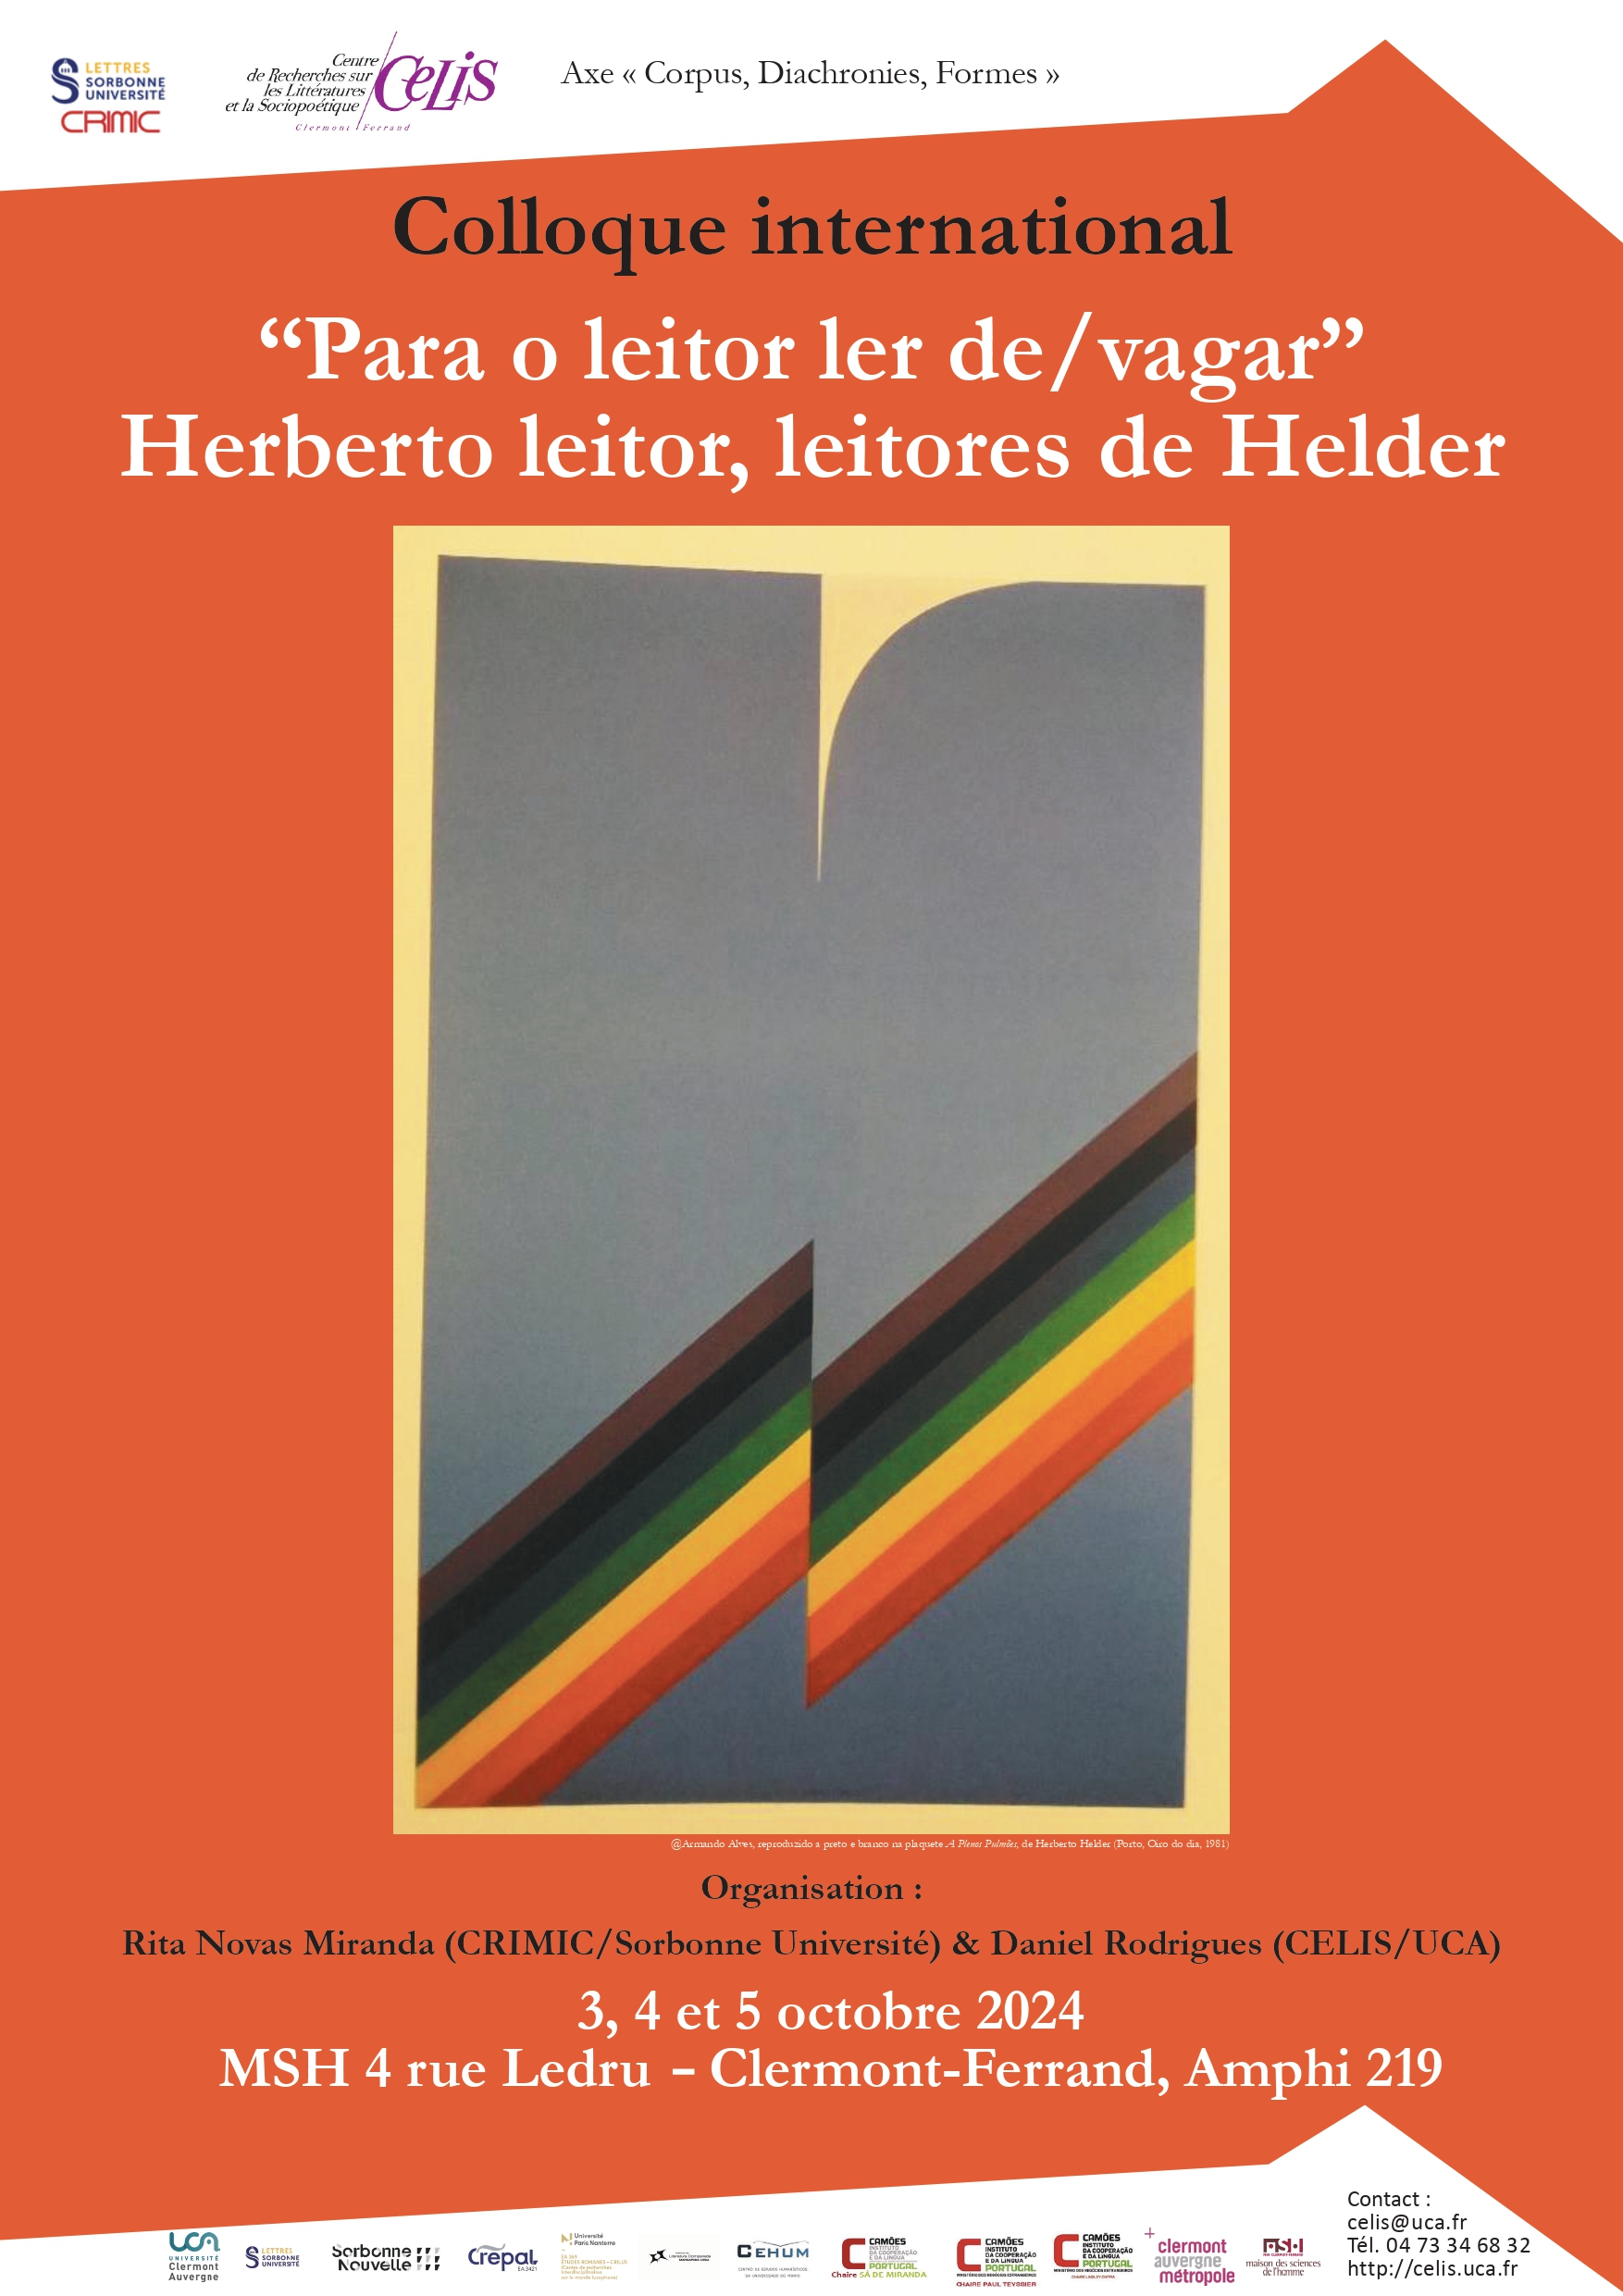 Colloque international “Para o leitor de/vagar” – Herberto leitor, leitores de Helder